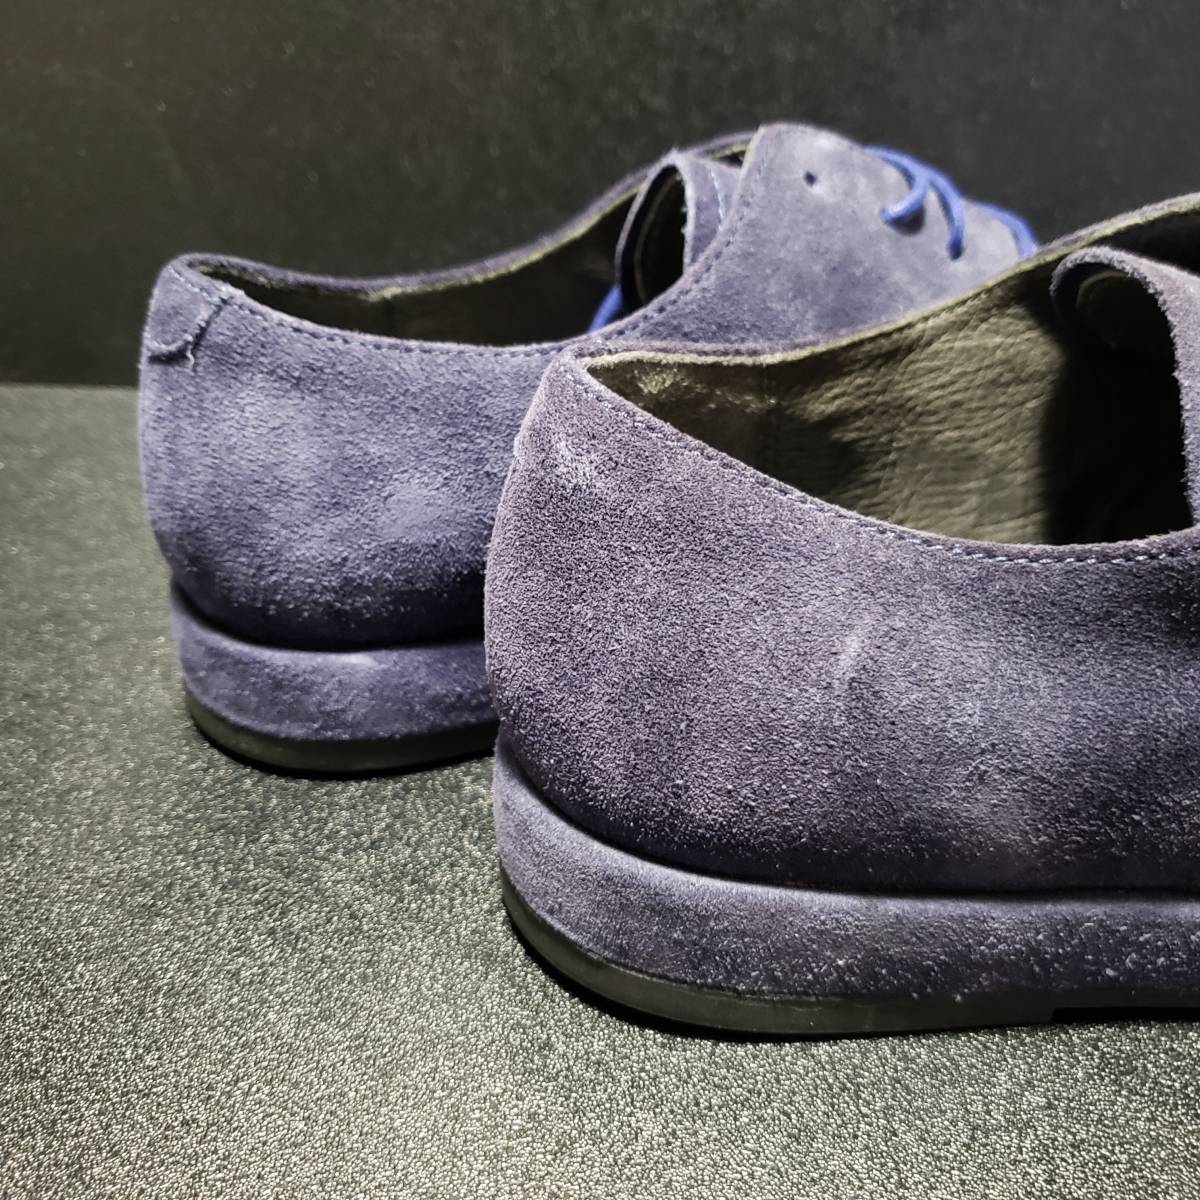  Camper (Camper) Fidelius Dubey shoes blue EU41